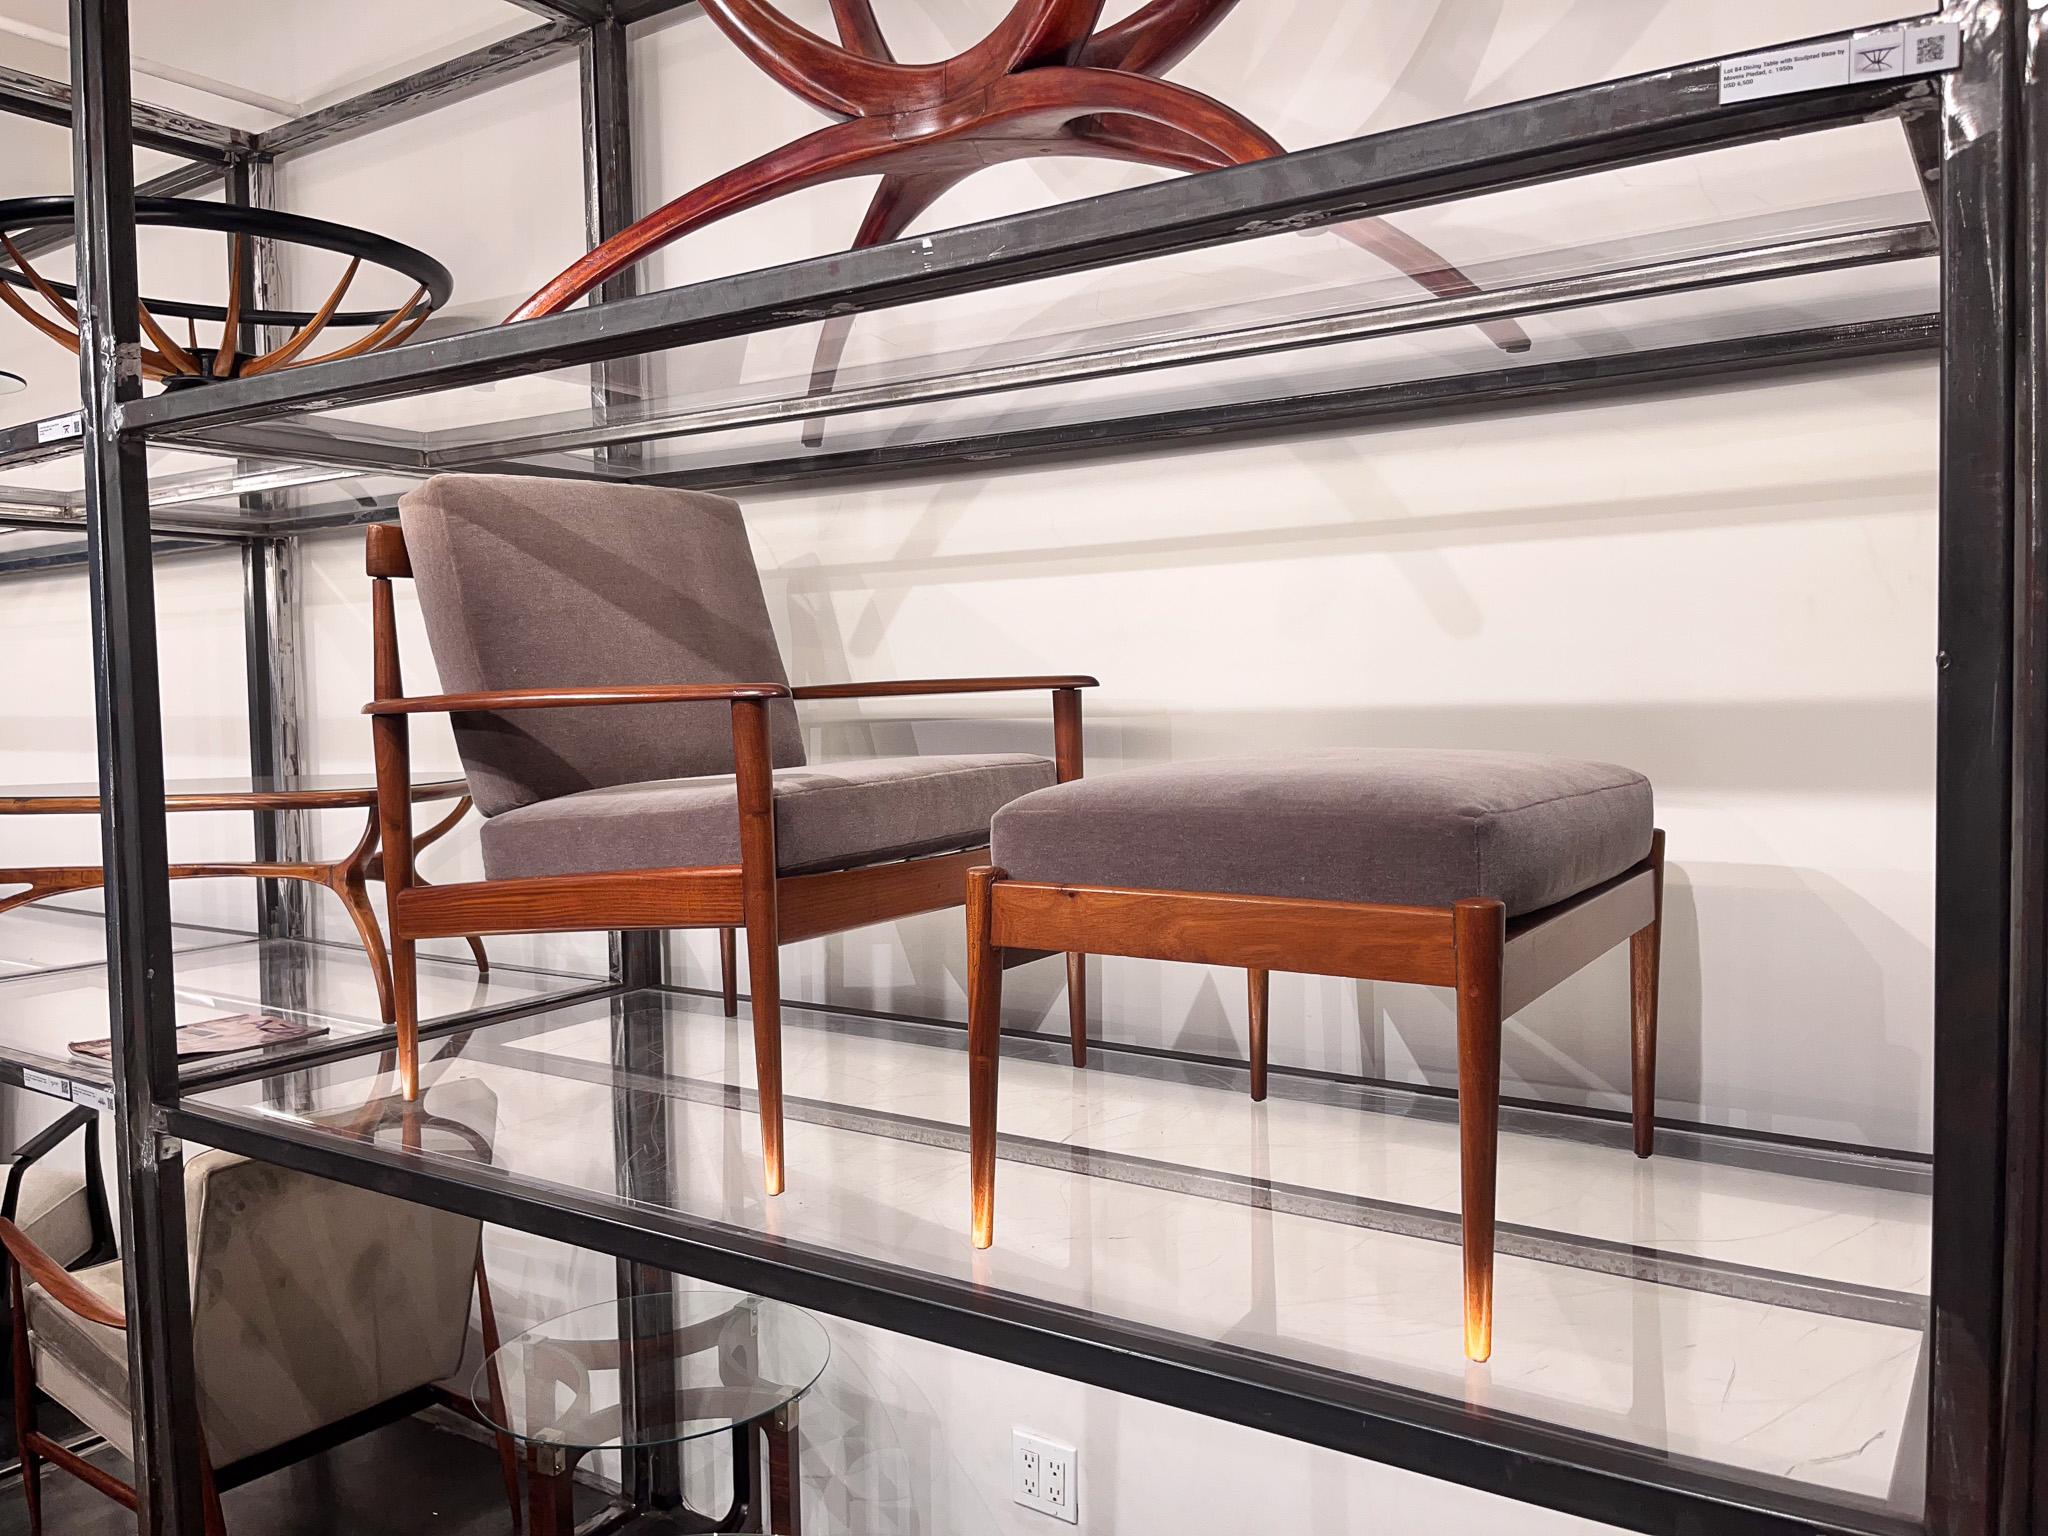 Sofort verfügbar mit ergänzendem Inlandsversand im Großraum NYC

Bringen Sie einen Hauch von Raffinesse in Ihren Wohnbereich mit diesem außergewöhnlichen Sessel- und Ottomanen-Set, das von dem bekannten Architekten Rino Levi's entworfen wurde.